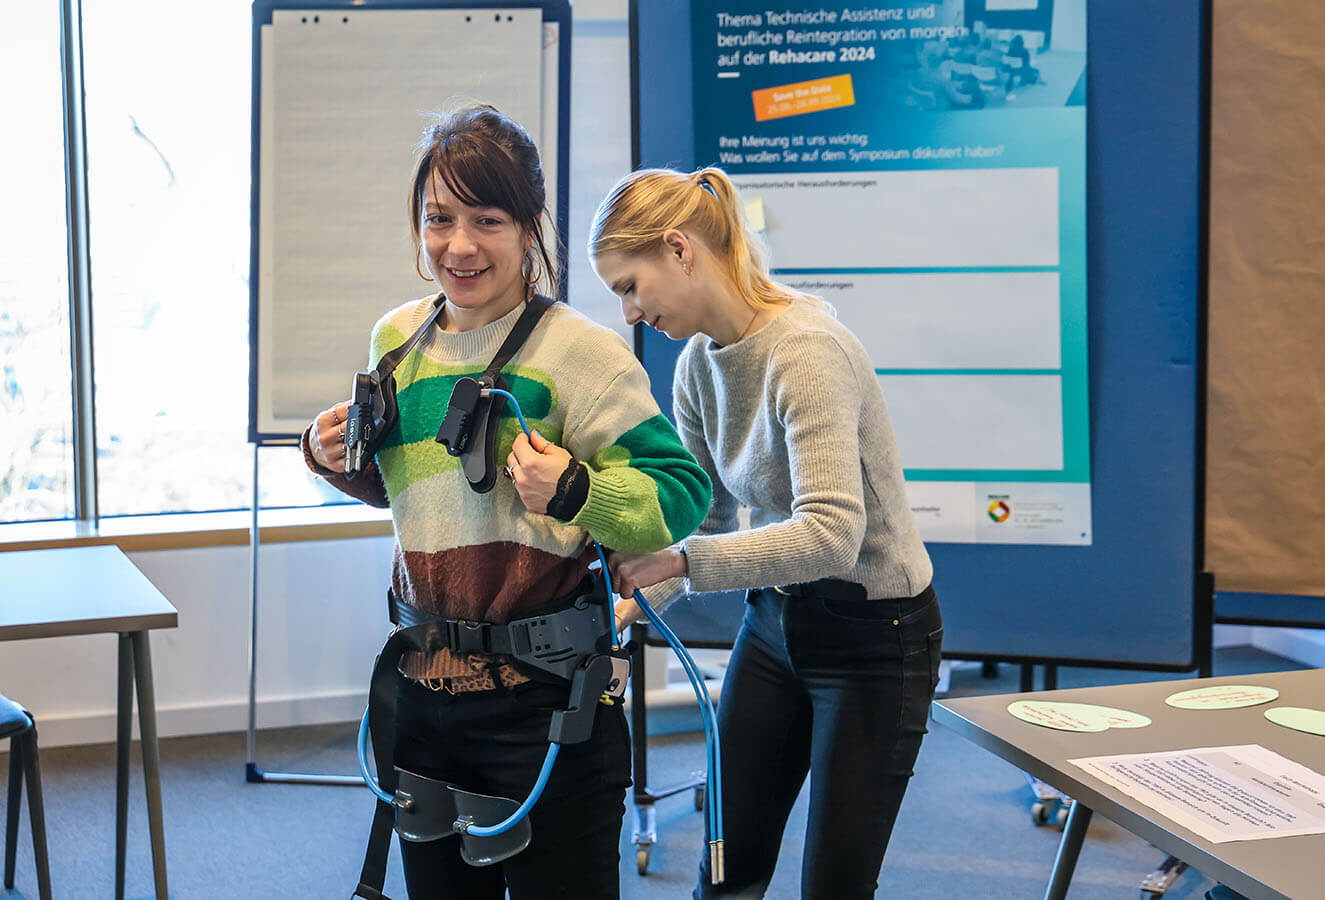 Das Foto zeigt zwei junge Frauen. Die Vordere trägt ein sogenanntes Exoskelett. Die Frau hinter hier, hilft beim Anziehen des Assistenzsystems.